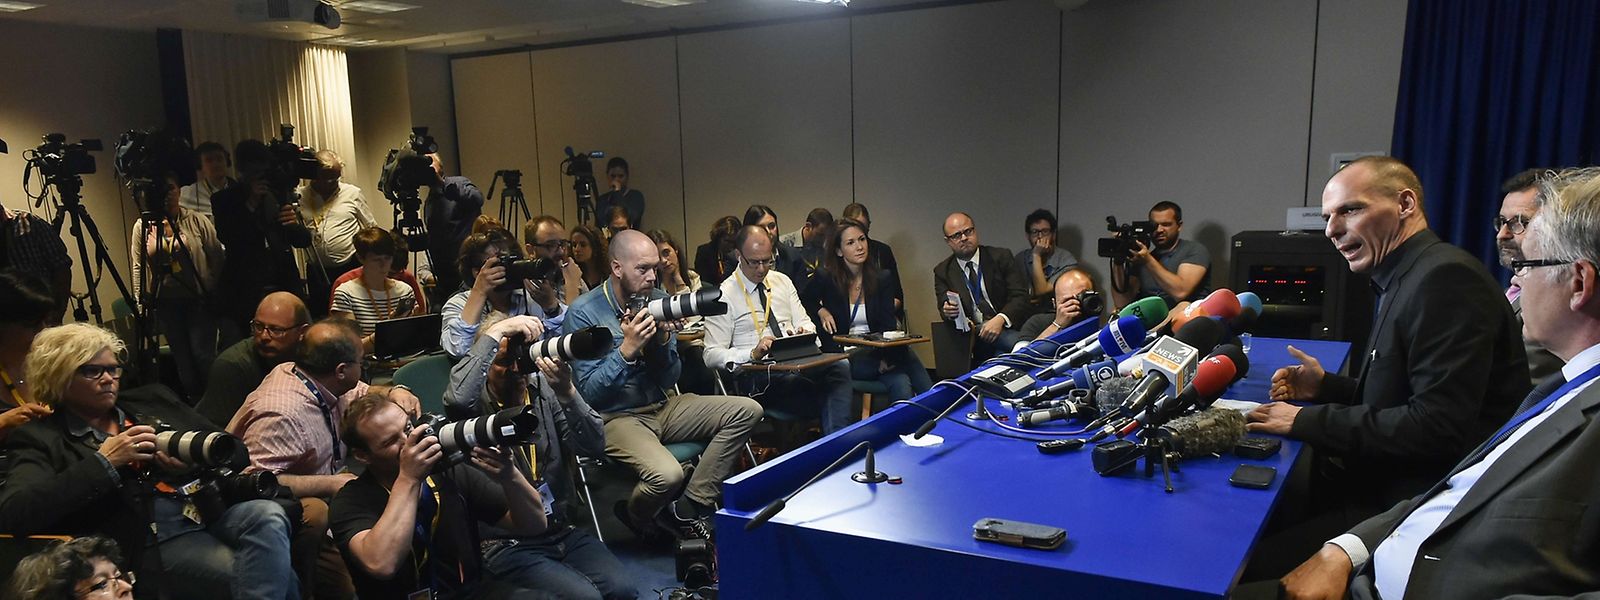 Griechenlands Finanzminister Varoufakis am Samstag vor der Presse: War die Ankündigung eines Referendums die eine Volte zuviel?